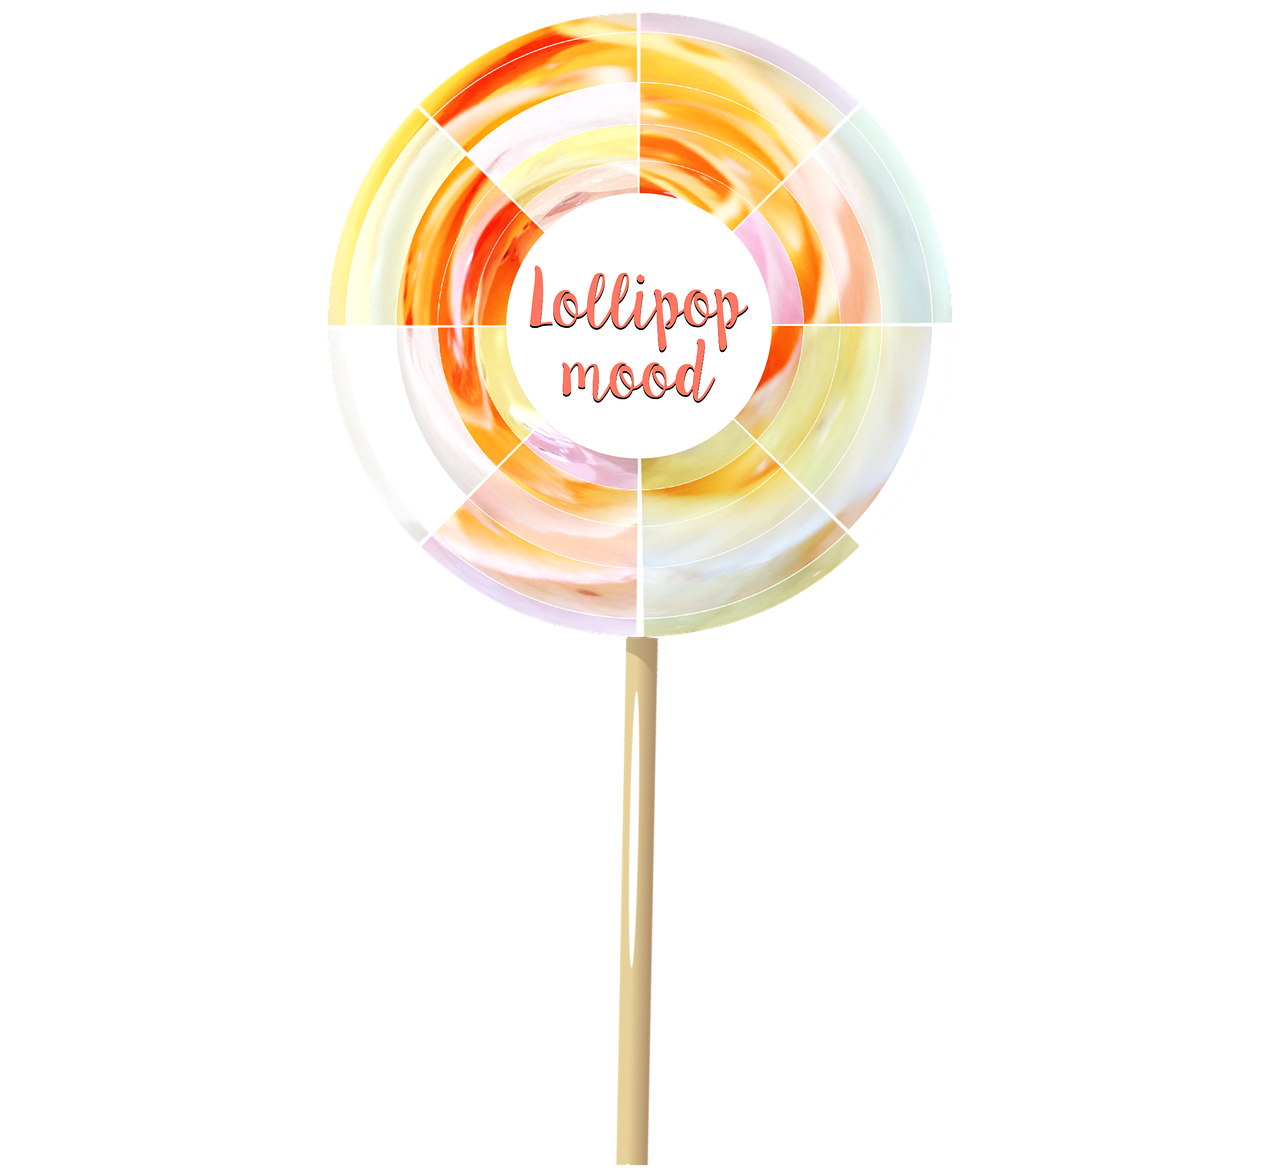 lollipop mood sweet free photo